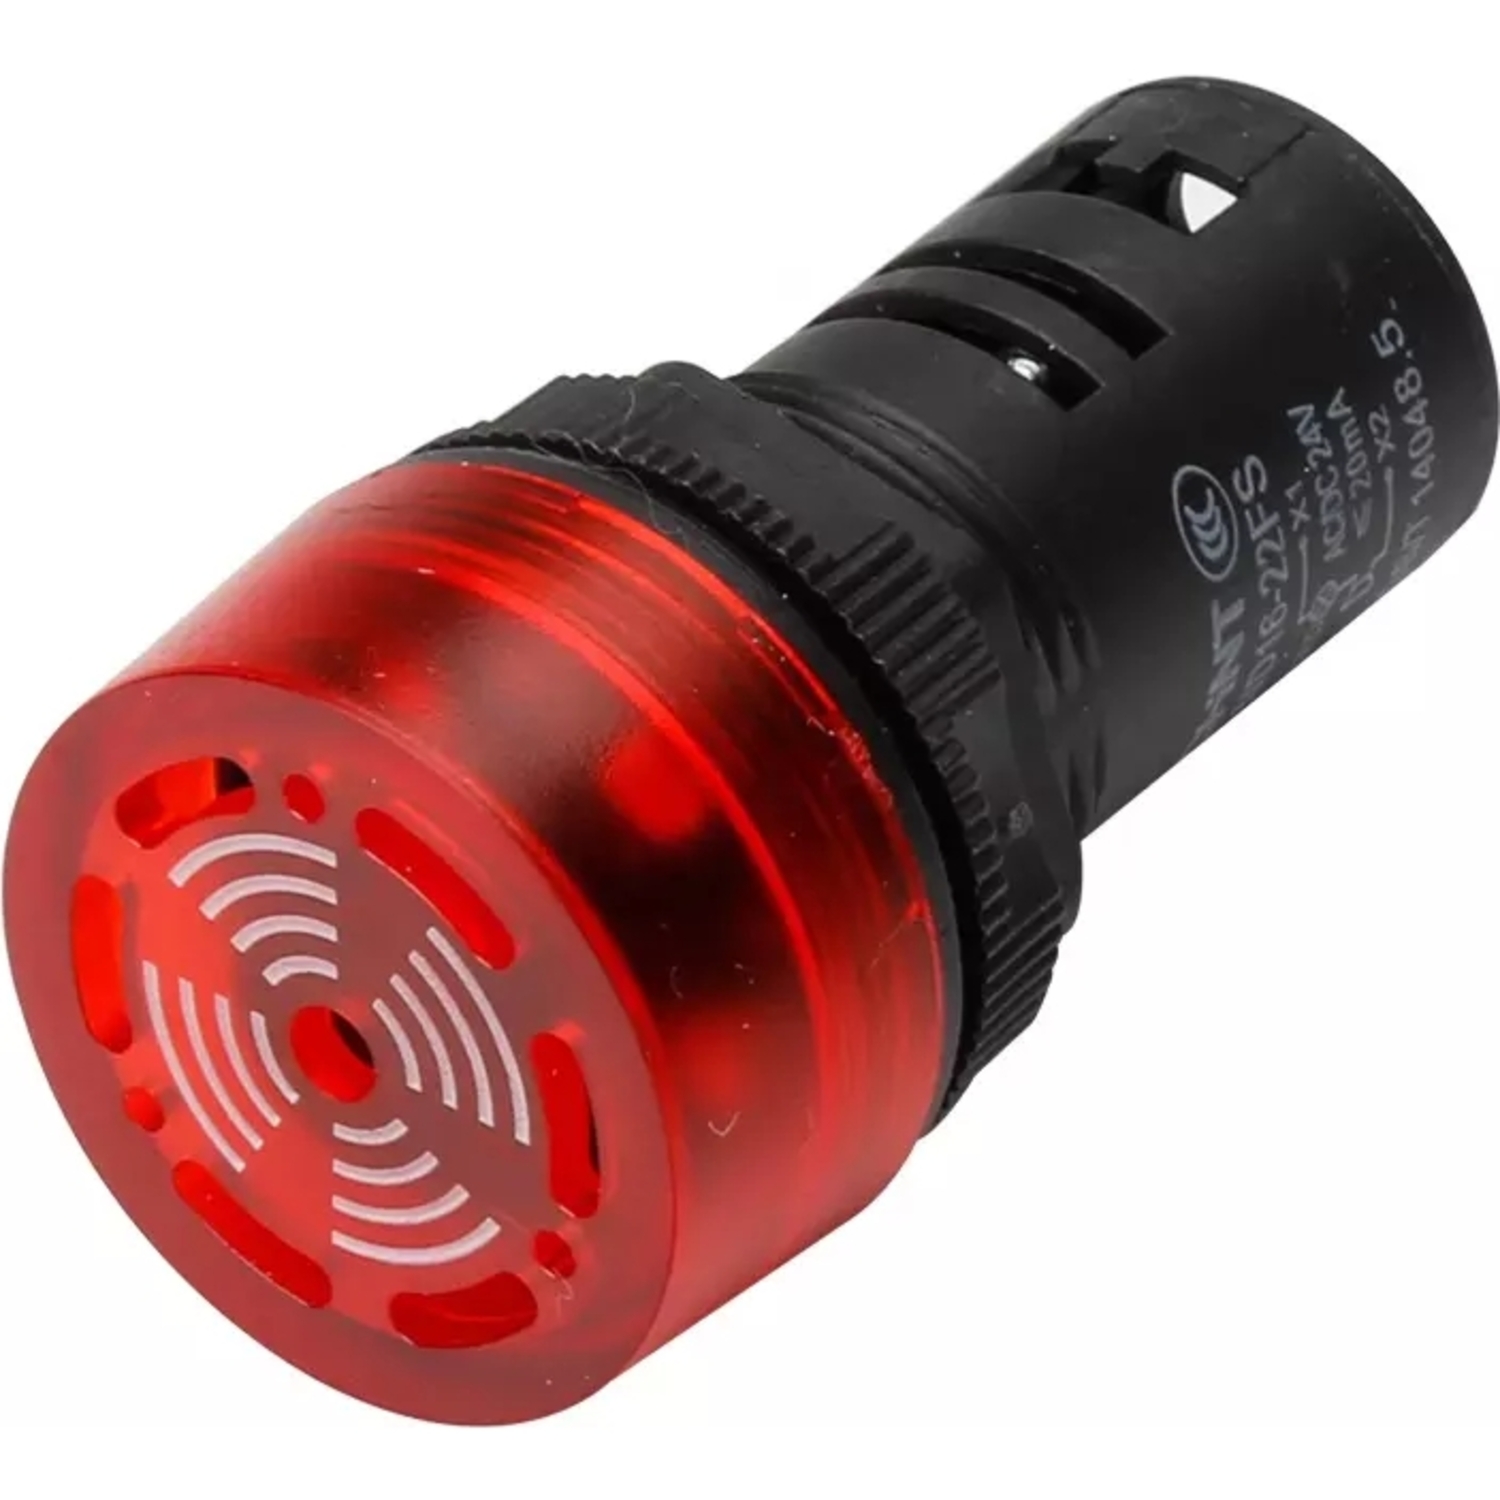 Сигнализатор звуковой ND16-22FS Φ22 мм красный LED АС220В (R)